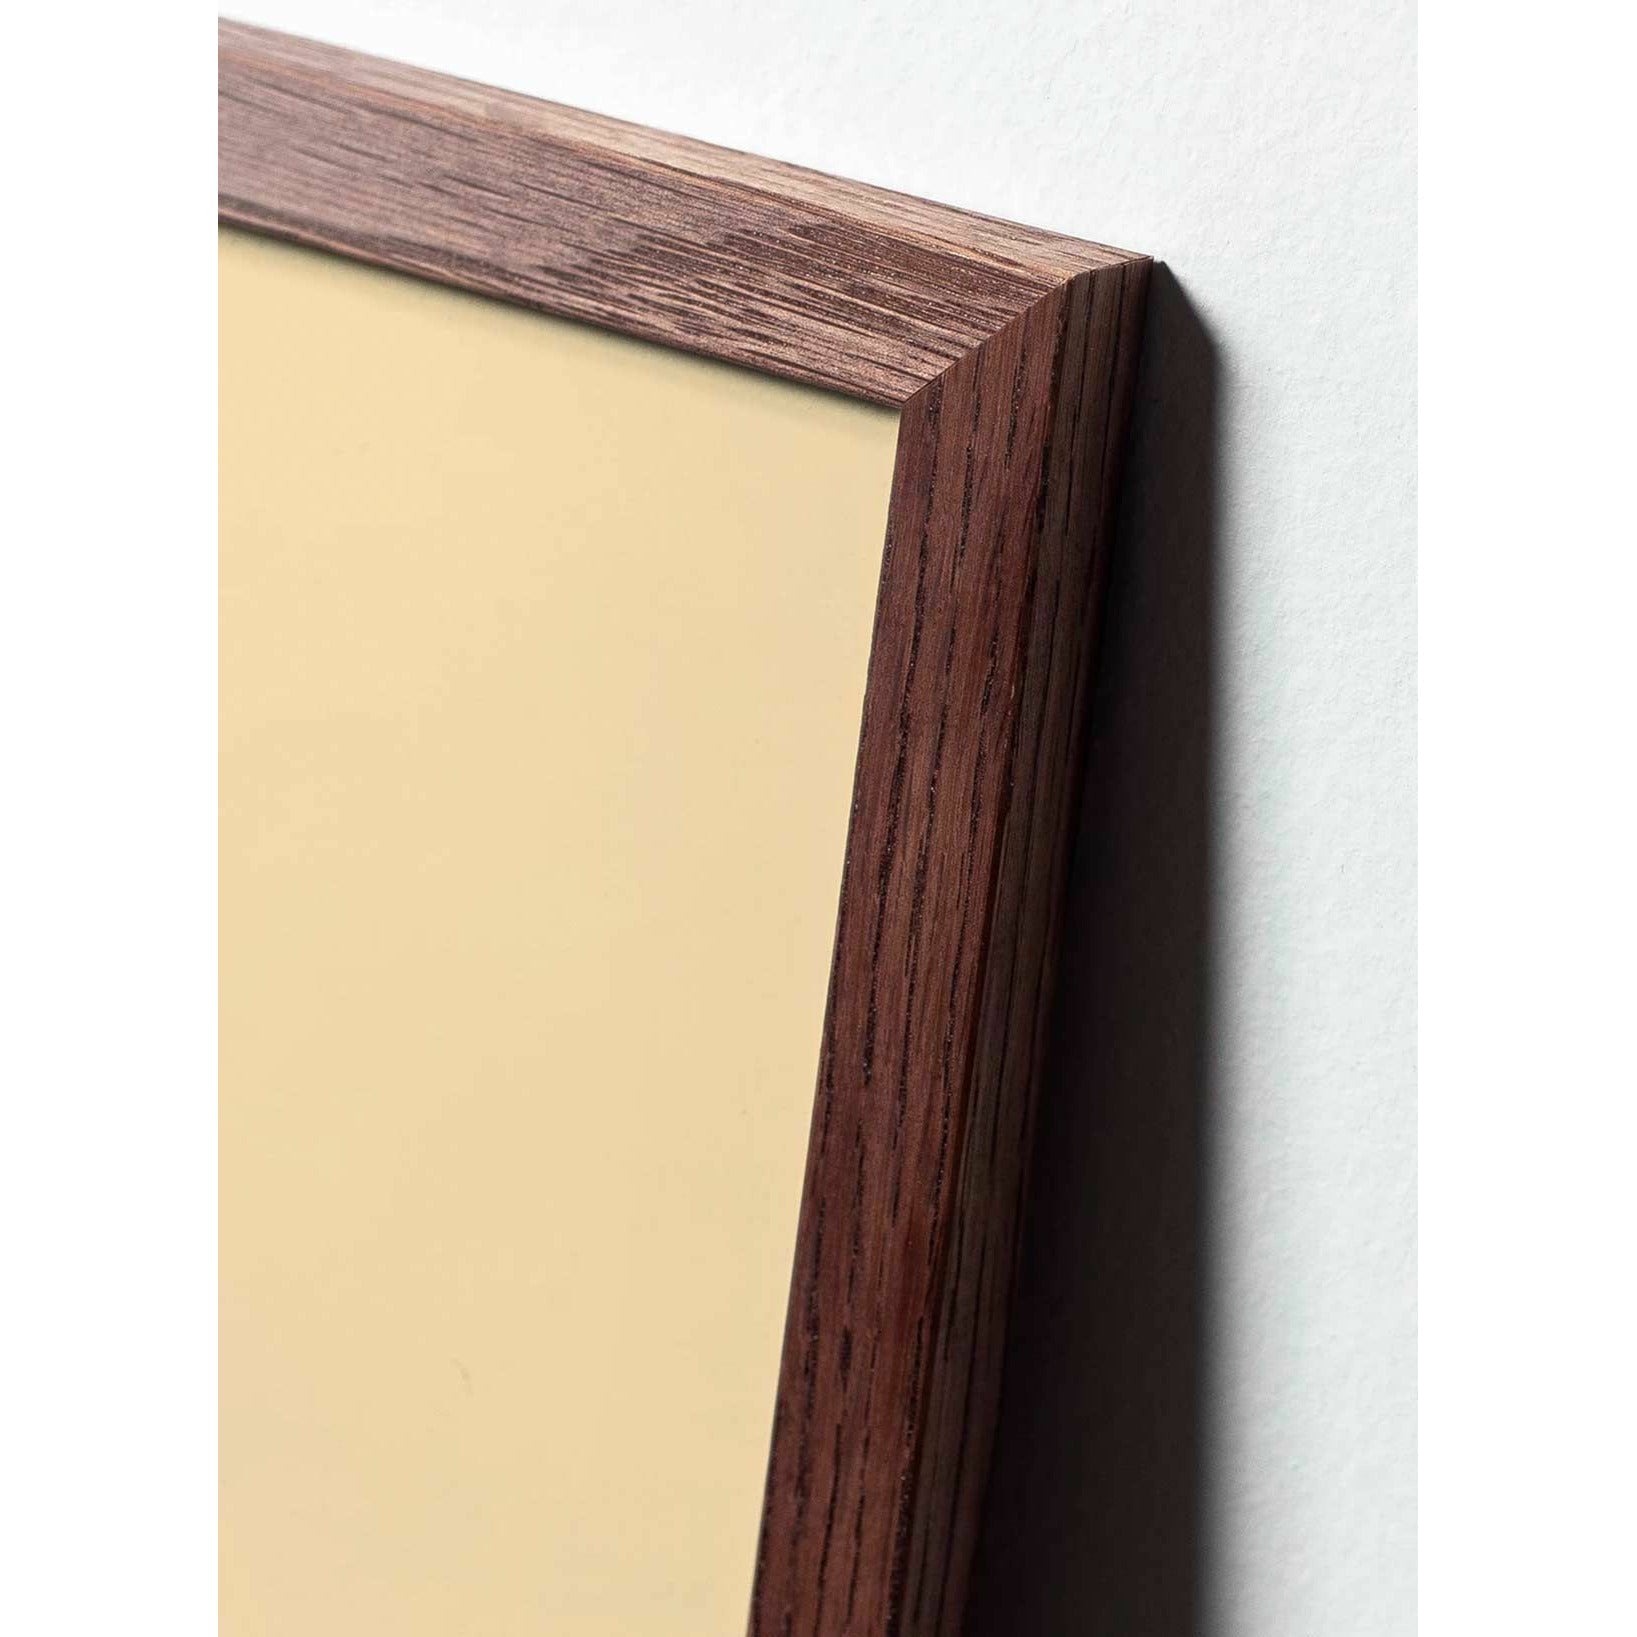 Póster de línea de caída de creación, marco de madera oscura A5, fondo blanco